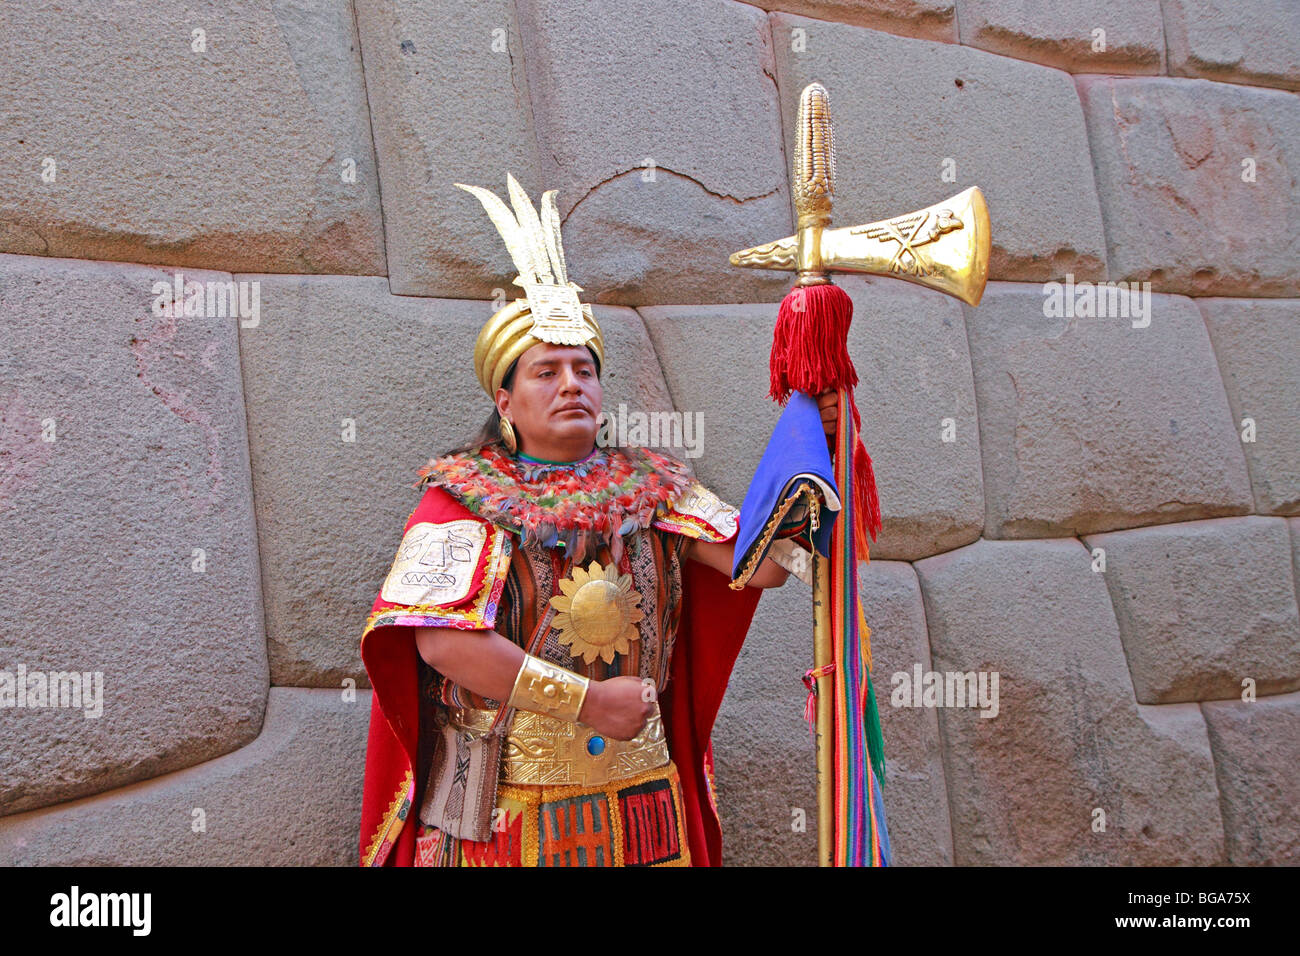 L'homme natif agissant comme un guerrier Inca à Calle Hatun Rumiyok, Cuzco, Andes, Pérou, Amérique du Sud Banque D'Images